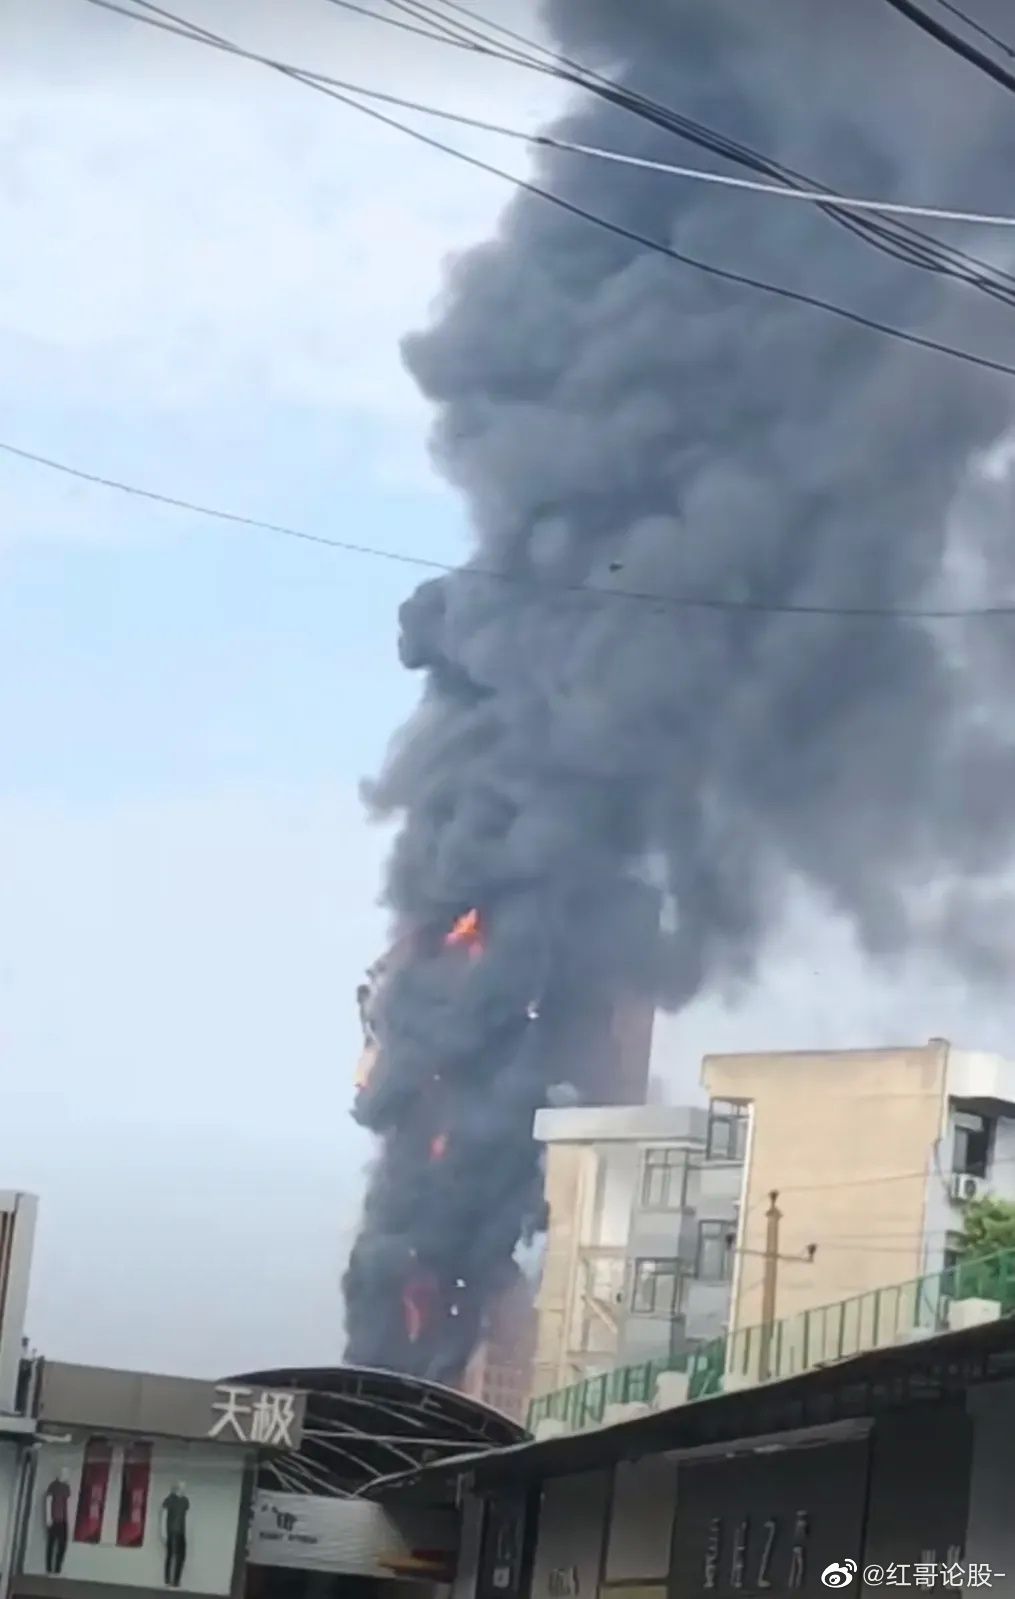  长沙中国电信大楼失火